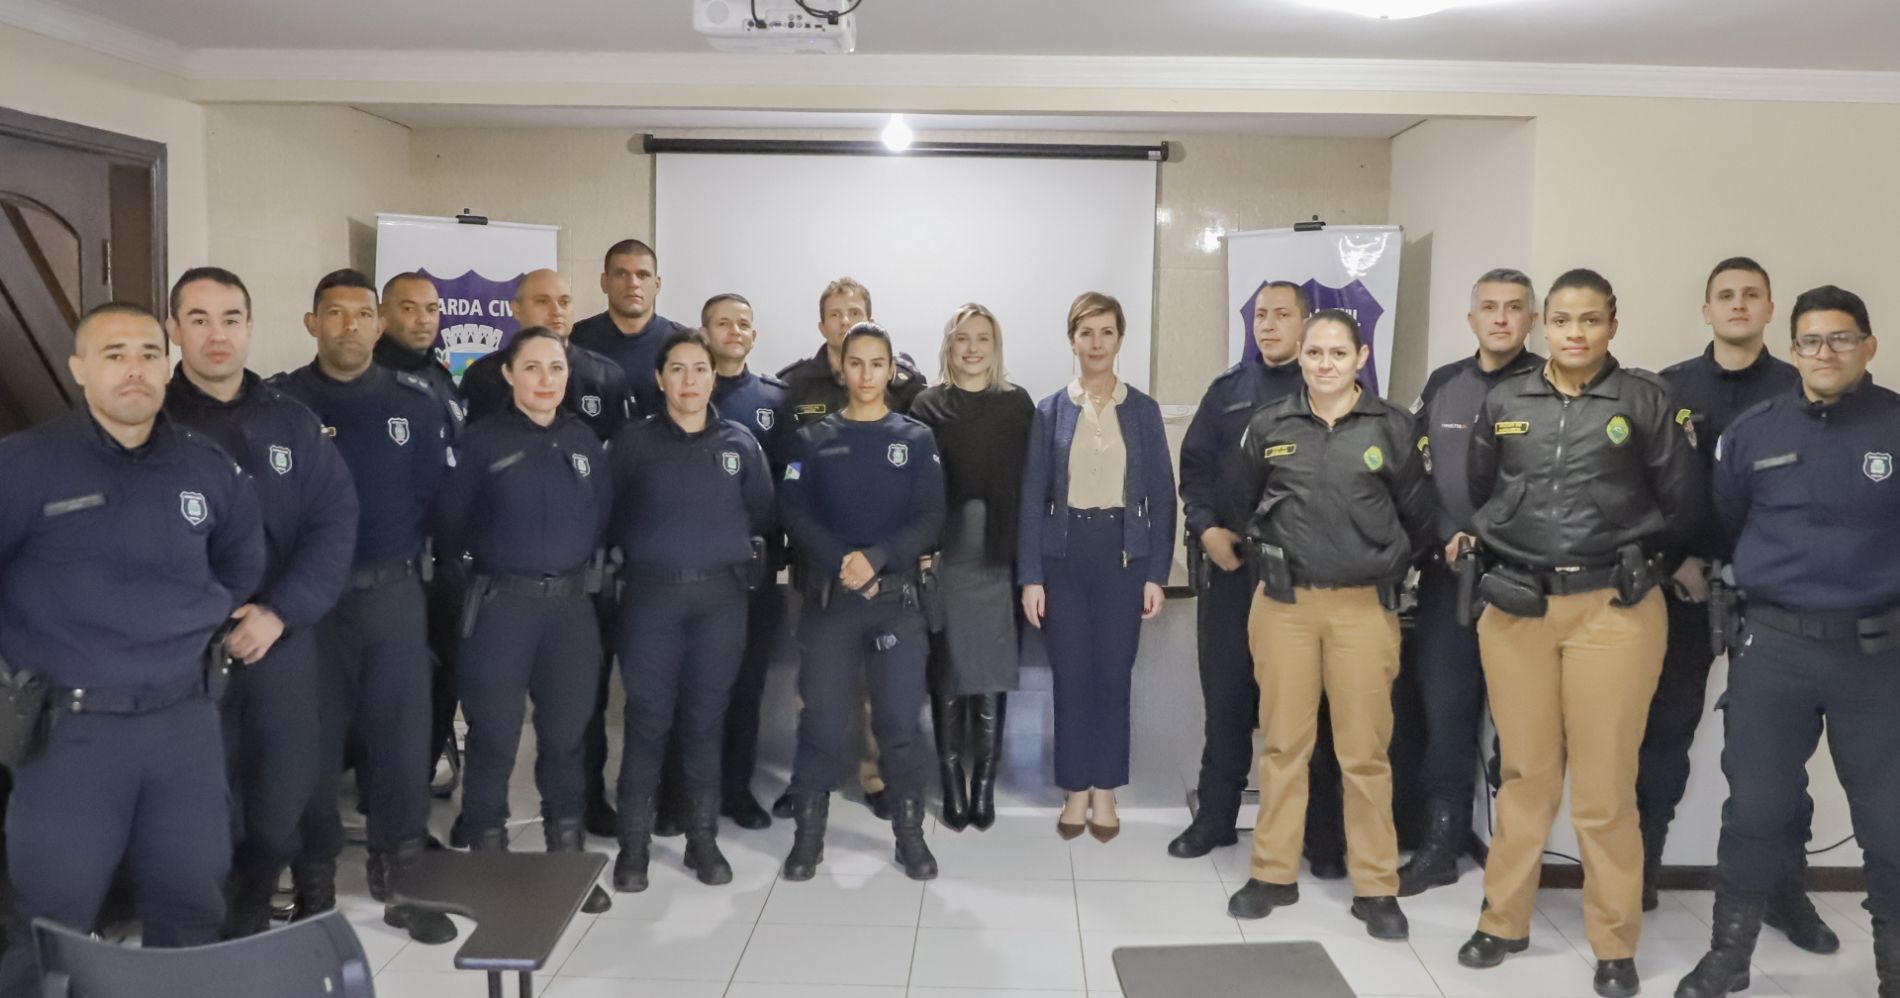 Guarda Civil Municipal de Campina Grande do Sul recebe capacitação contra a violência familiar e de gênero